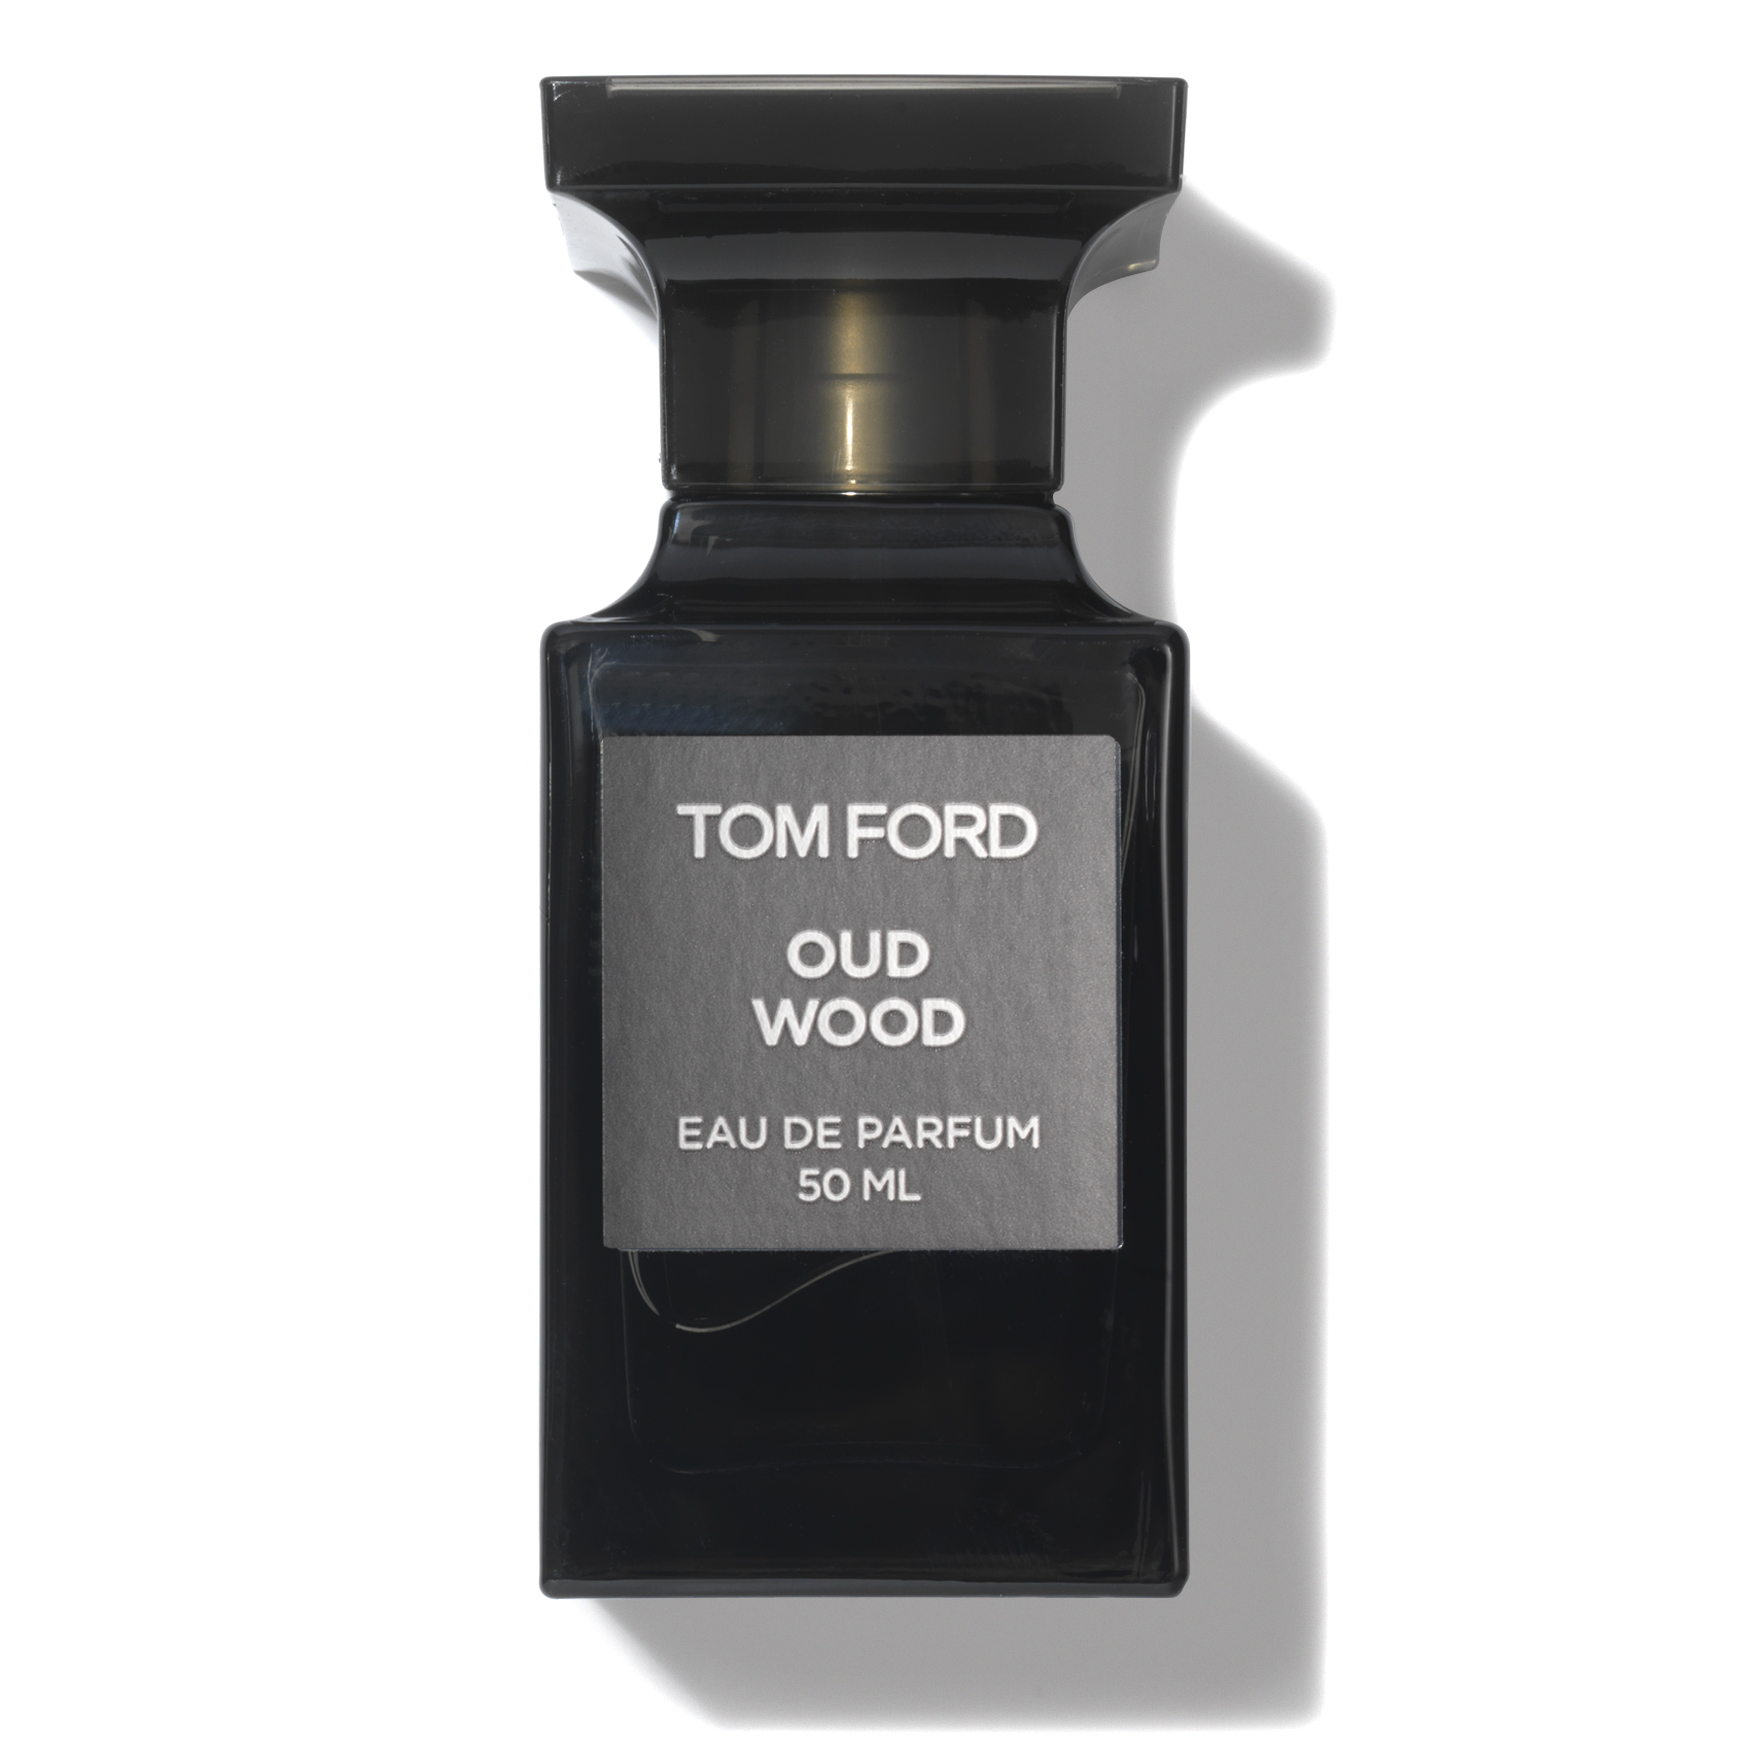 Tom Ford Oud Wood Eau de Parfum | Space NK